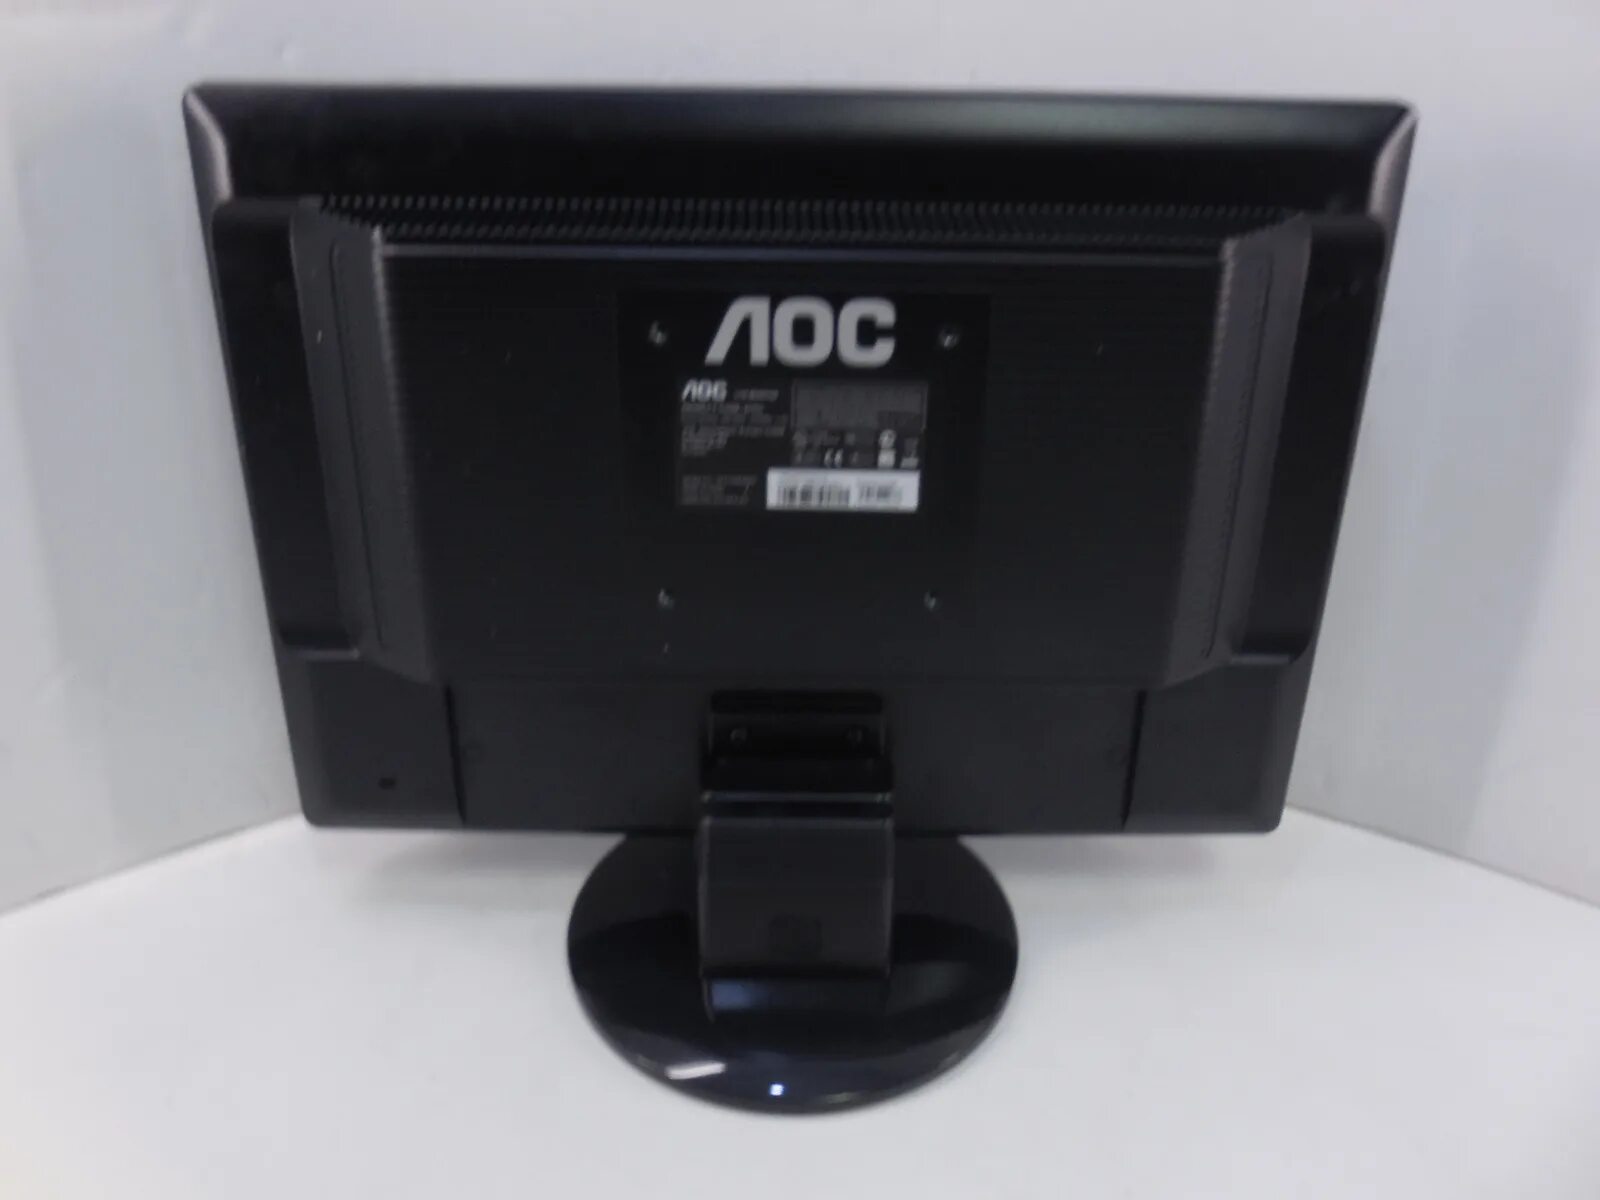 Жк монитор 19. Монитор AOC 917sw+. "Монитор 19"" LCD Samsung e1920nw wide VGA Black". Монитор AOC 992sw2. Монитор АОС 19 дюймов.